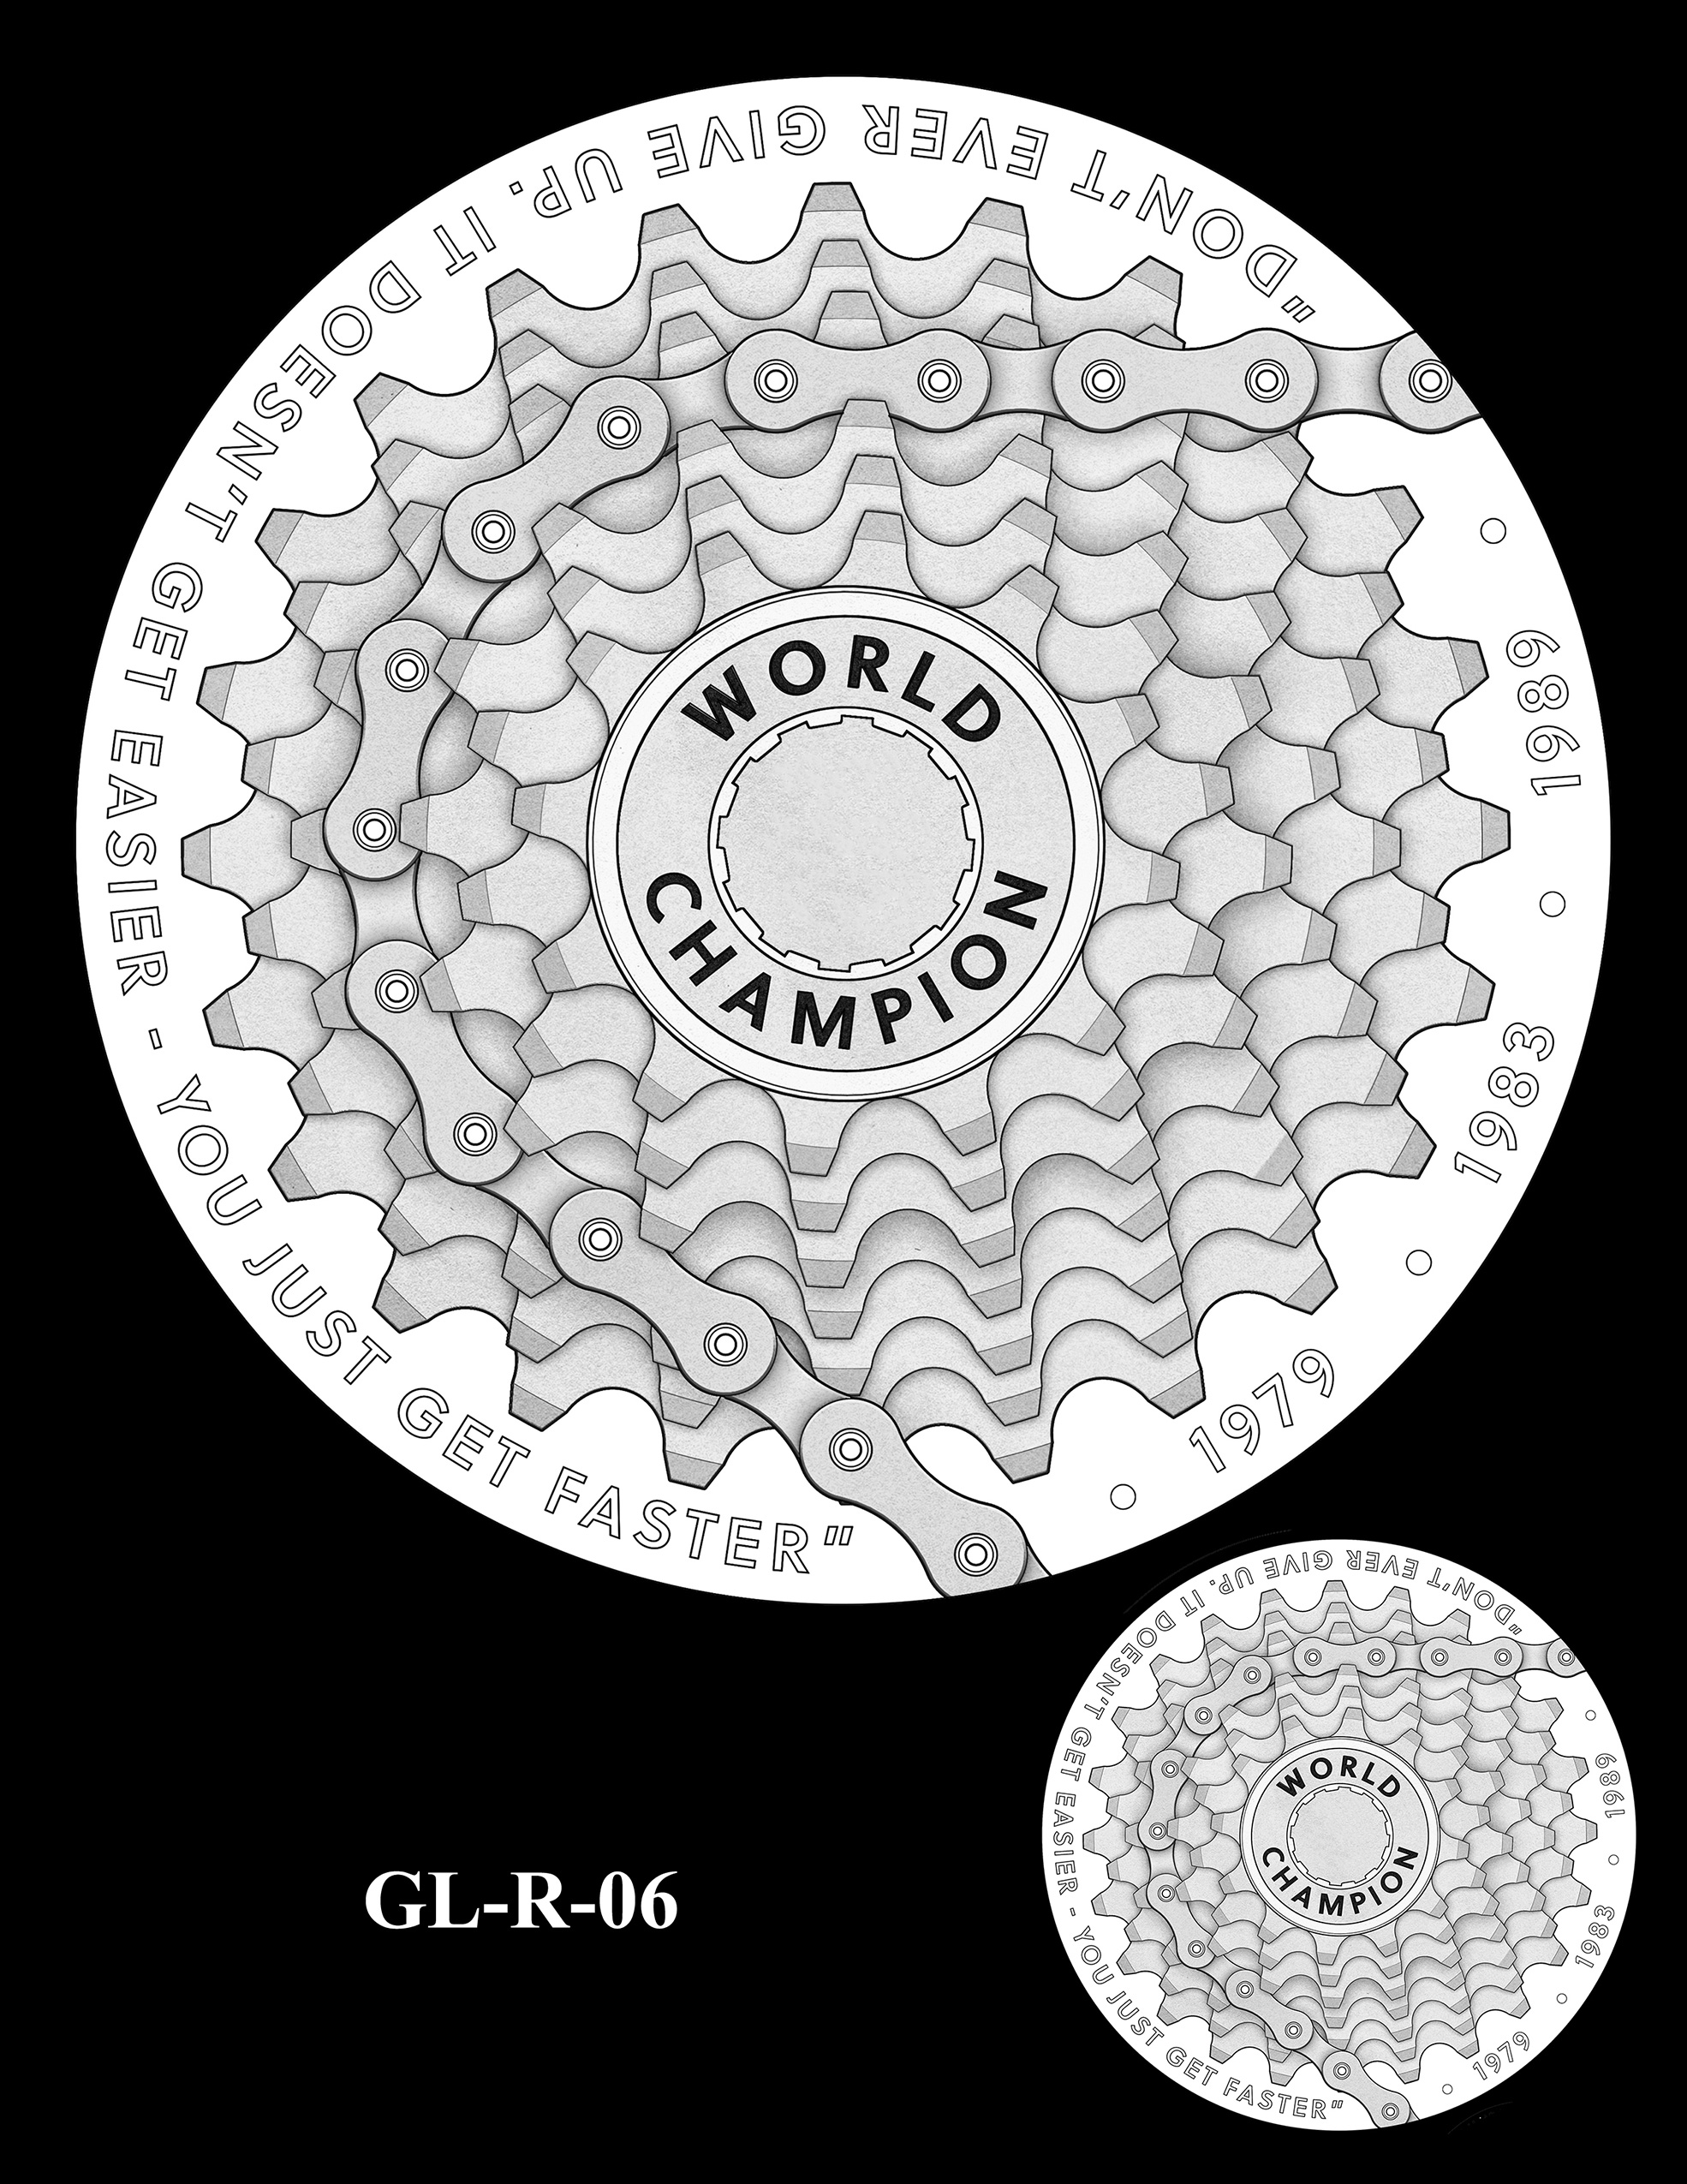 GL-R-06 -- Greg LeMond Congressional Gold Medal